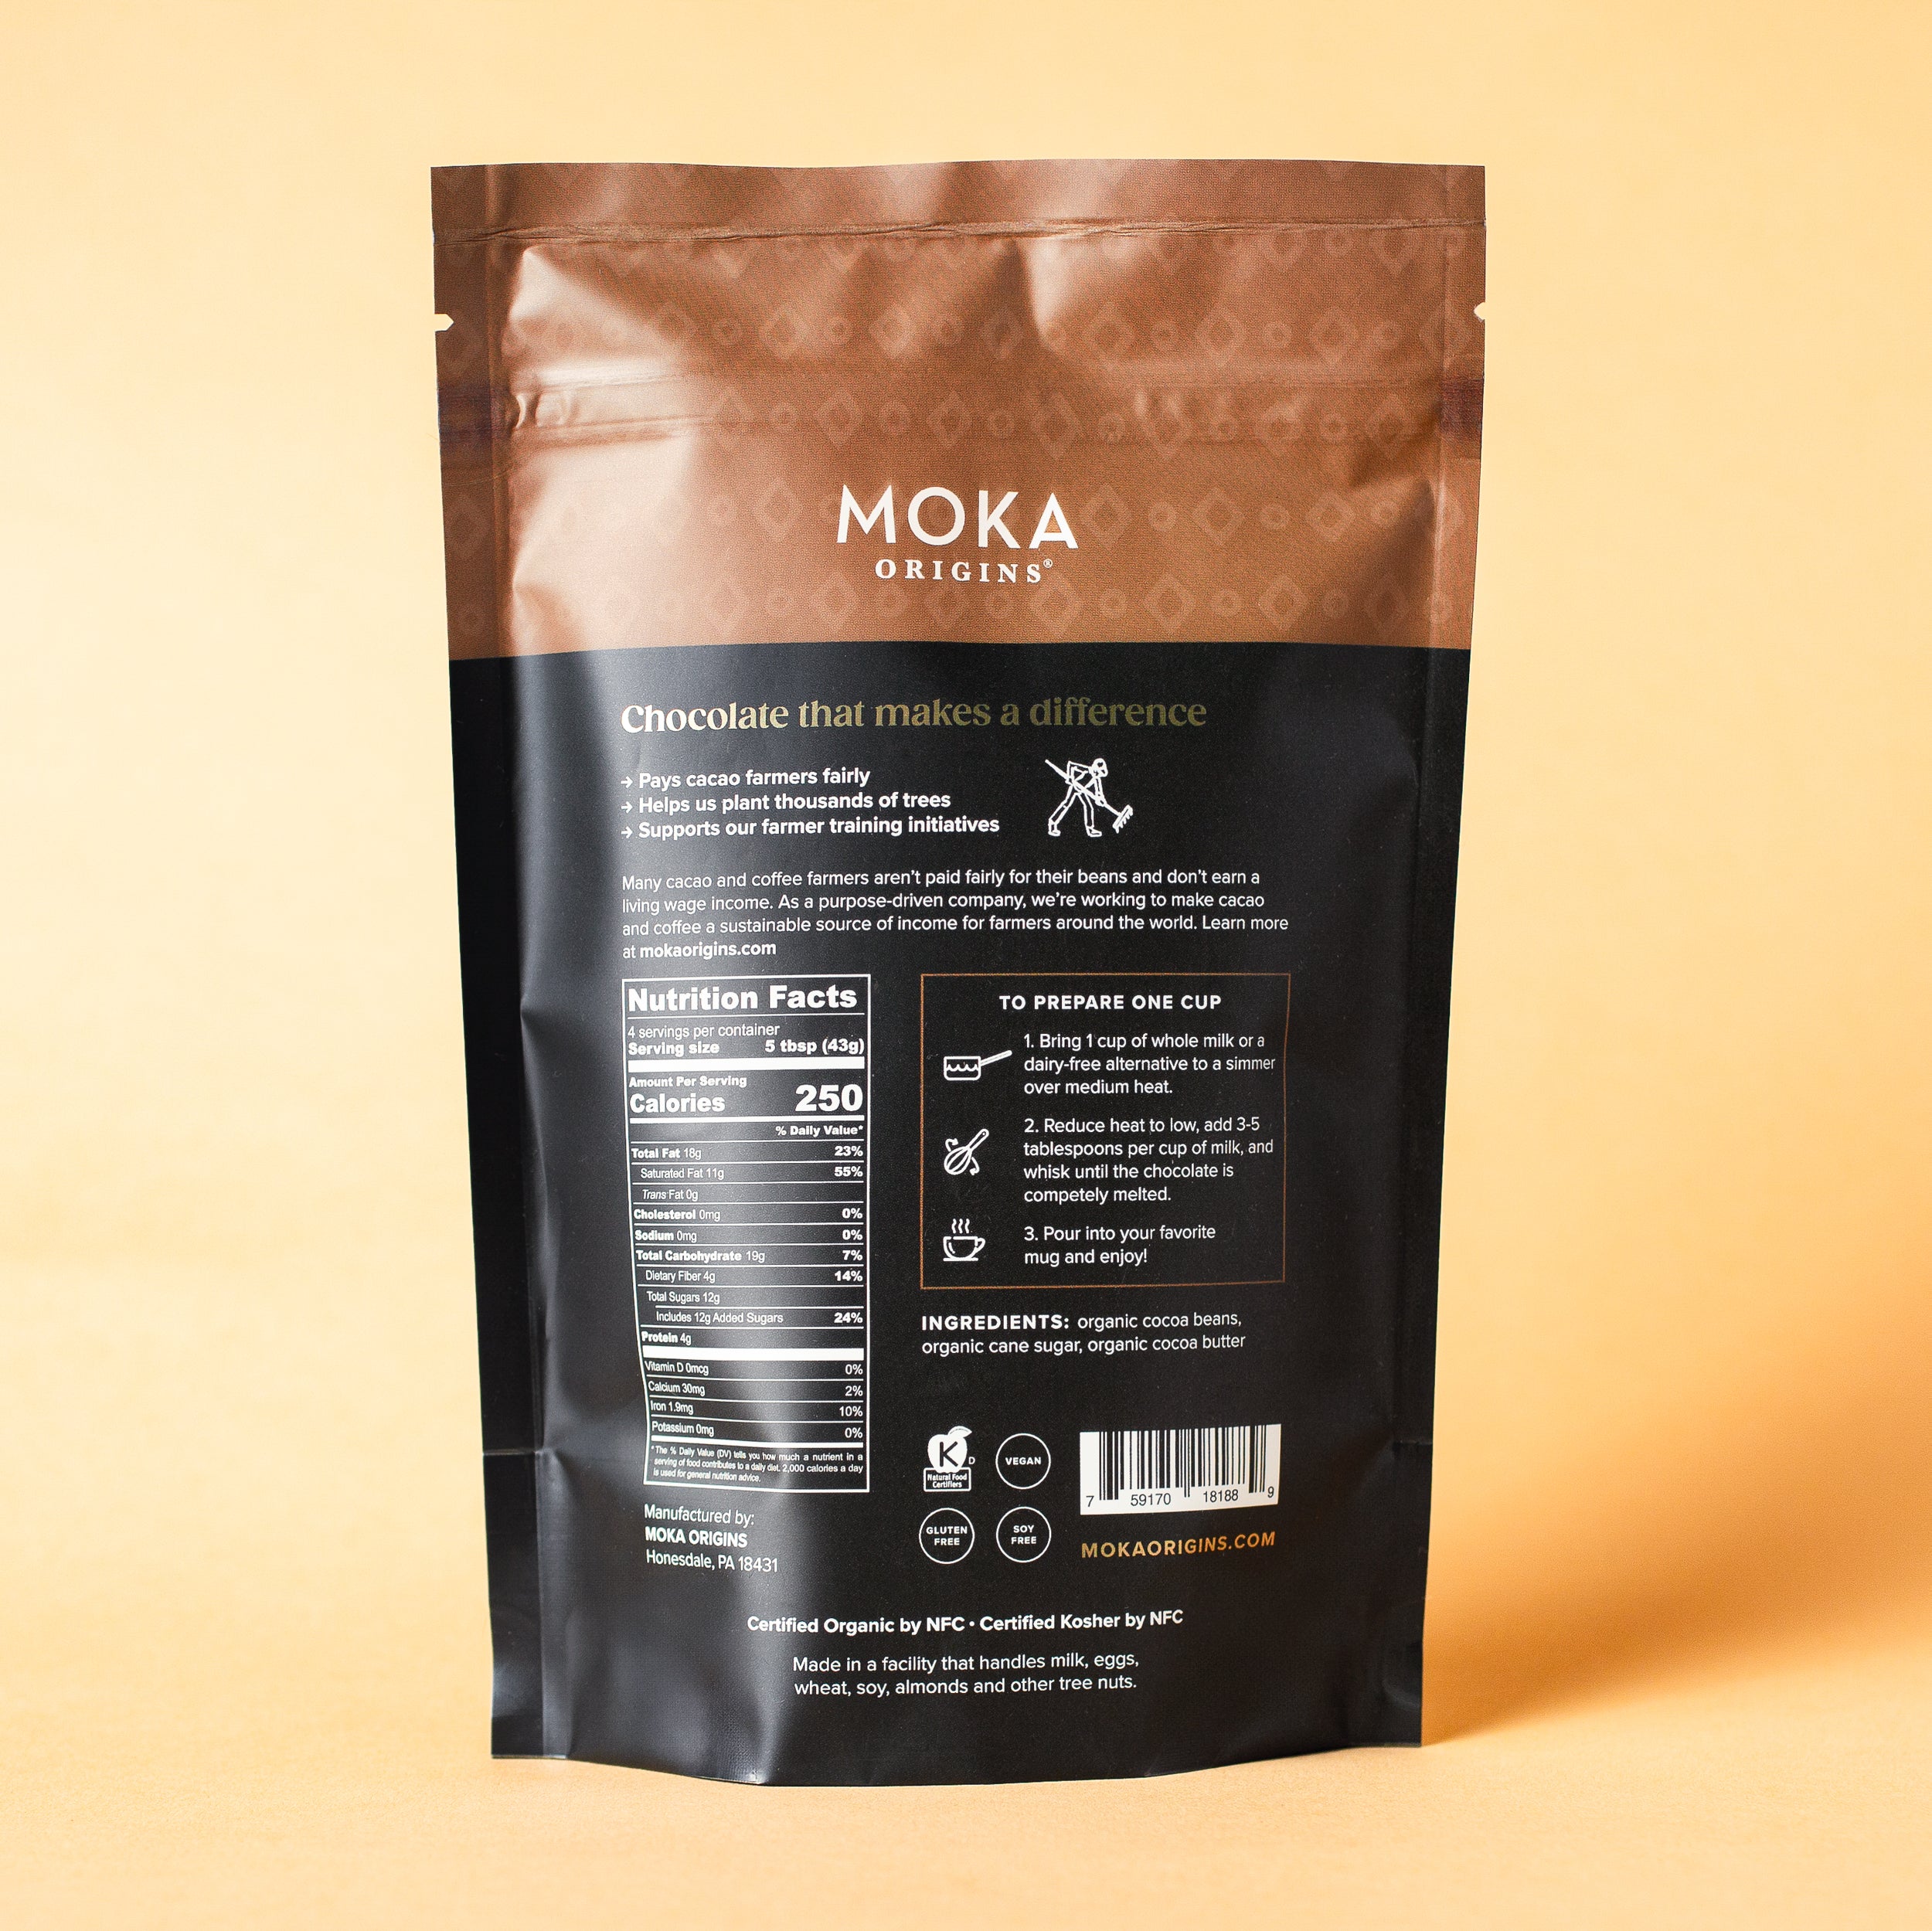 Pure Dark Drinking Chocolate – Moka Origins